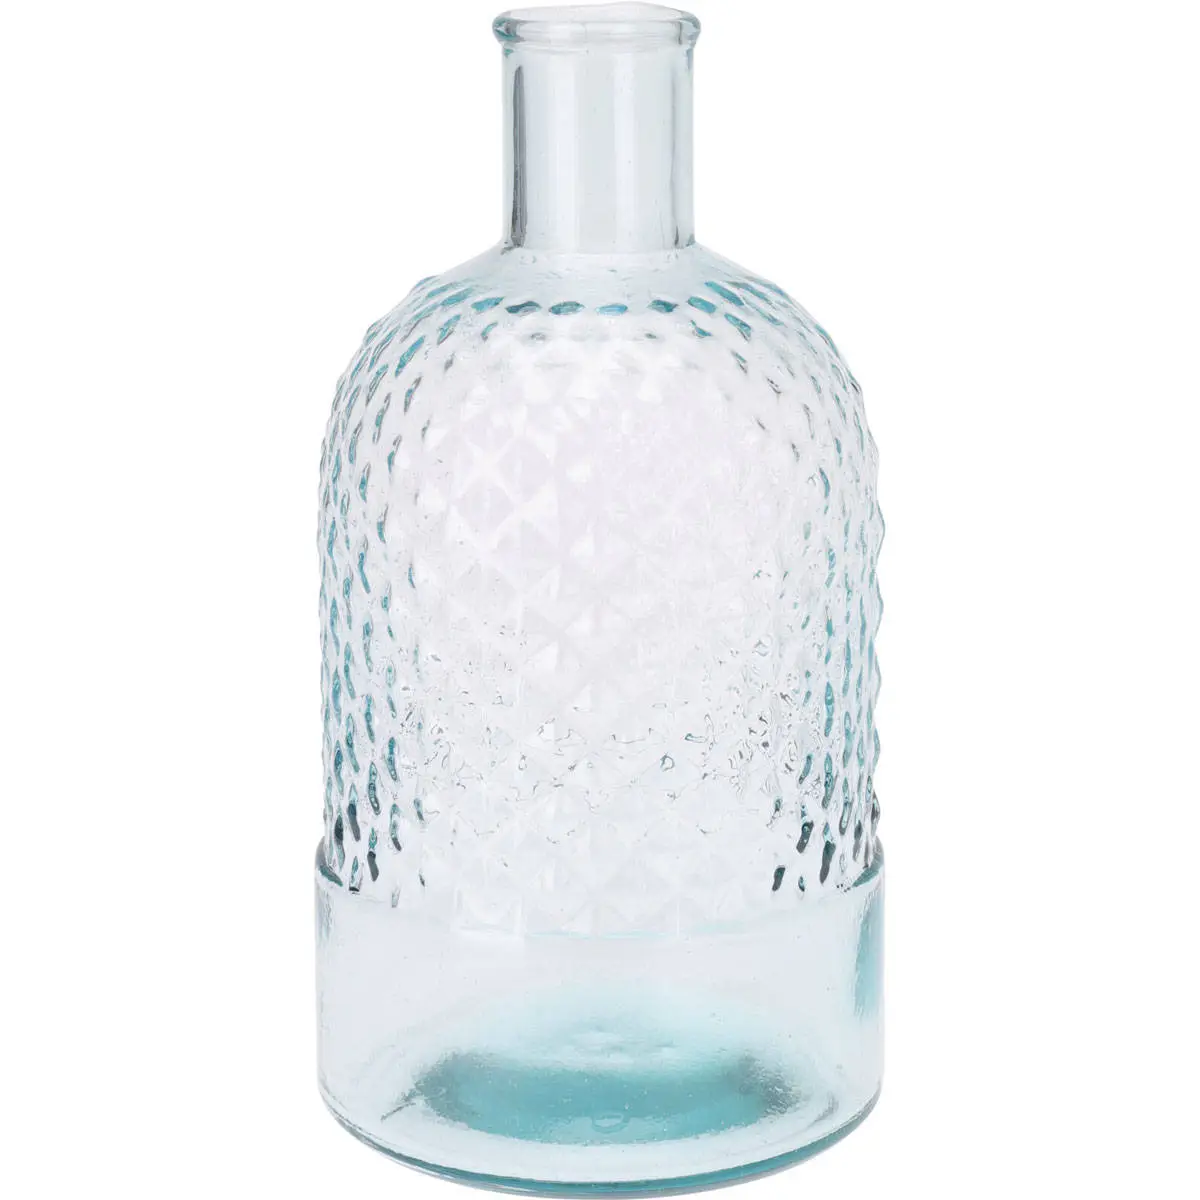 Blumenvase aus Glas, recyceltem Flasche